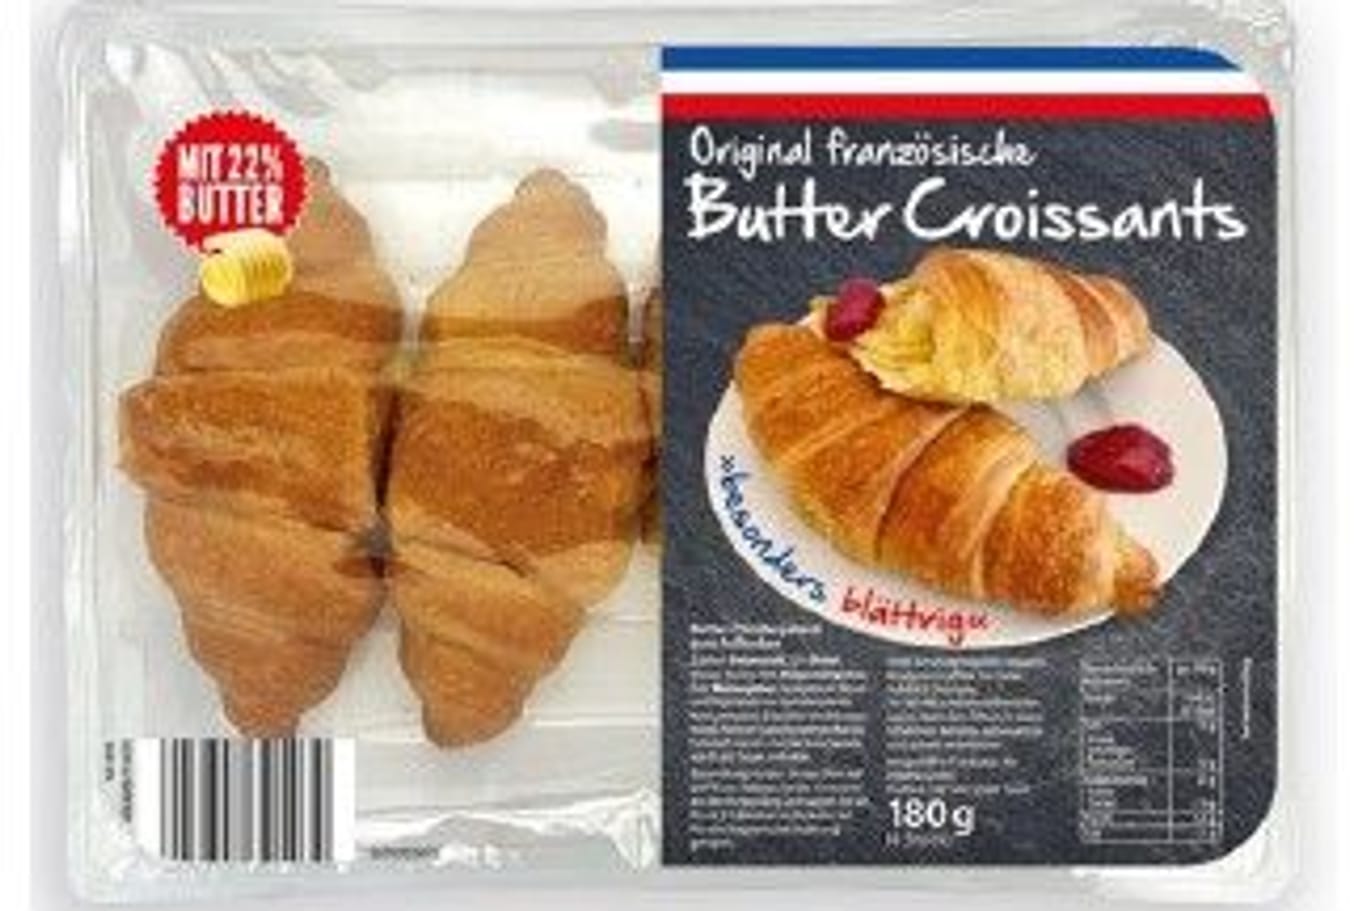 Aldente Butter Croissants: In einer bestimmten Charge wurde Metall gefunden.